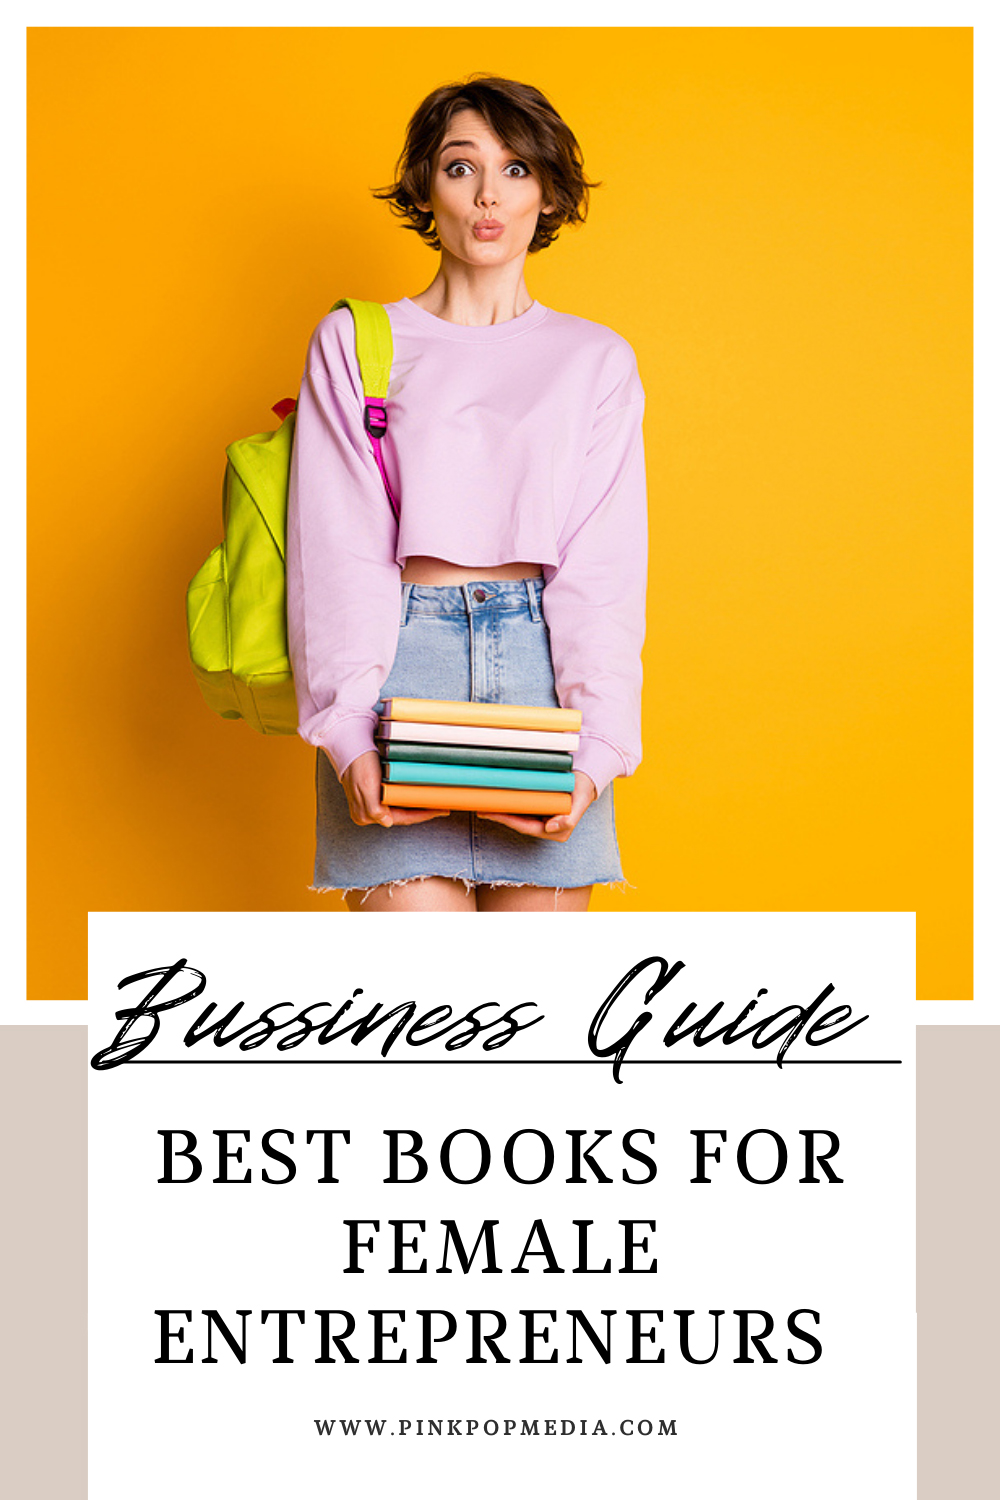 Best books for female entrepreneurs